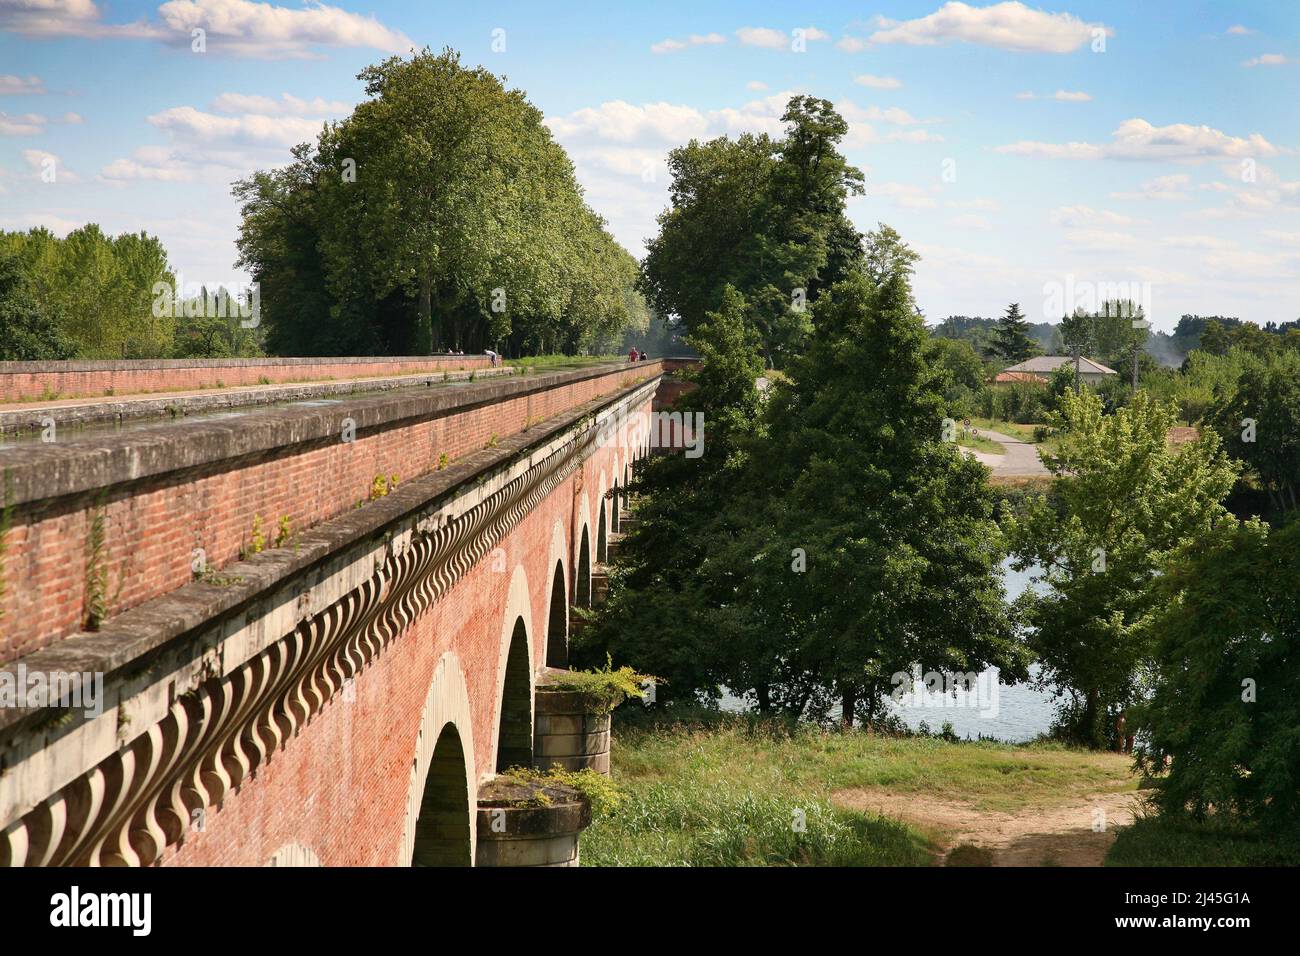 Moissac (sud-ouest de la France) : aqueduc fluvial Òpont-canal du CacorÓ. Pont d'eau entre la Garonne et le Tarn. Détail des arches dans Banque D'Images